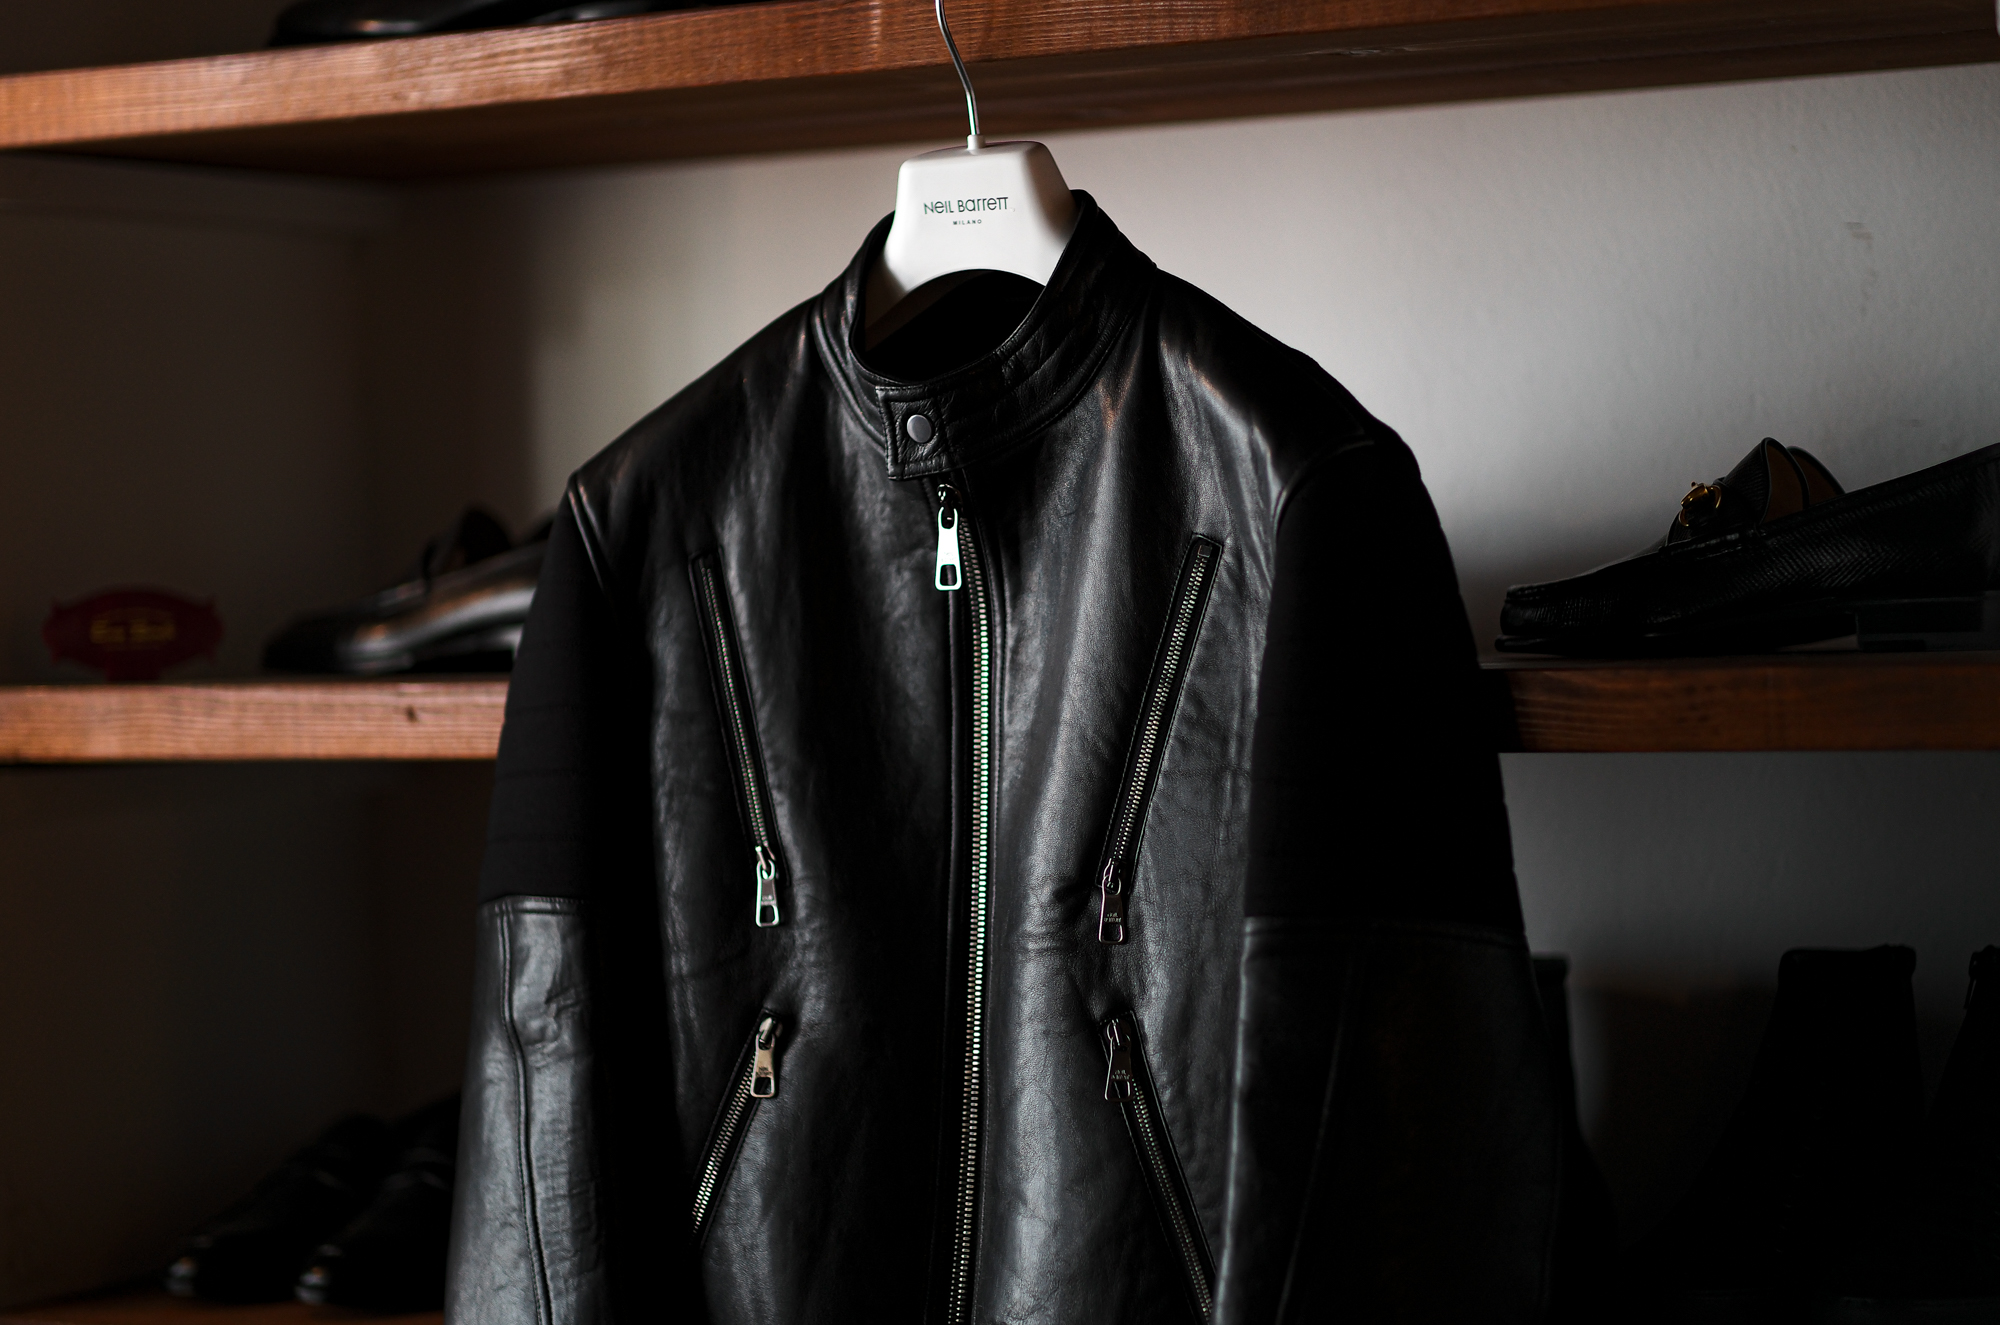 Neil Barrett (ニールバレット) Leather Front Sweatshirt Biker Jacket (レザーフロント スエットシャツ バイカージャケット) シングルライダース BLACK (ブラック・001) 2023秋冬新作 【入荷しました】【フリー分発売開始】愛知 名古屋 Alto e Diritto altoediritto アルトエデリット 